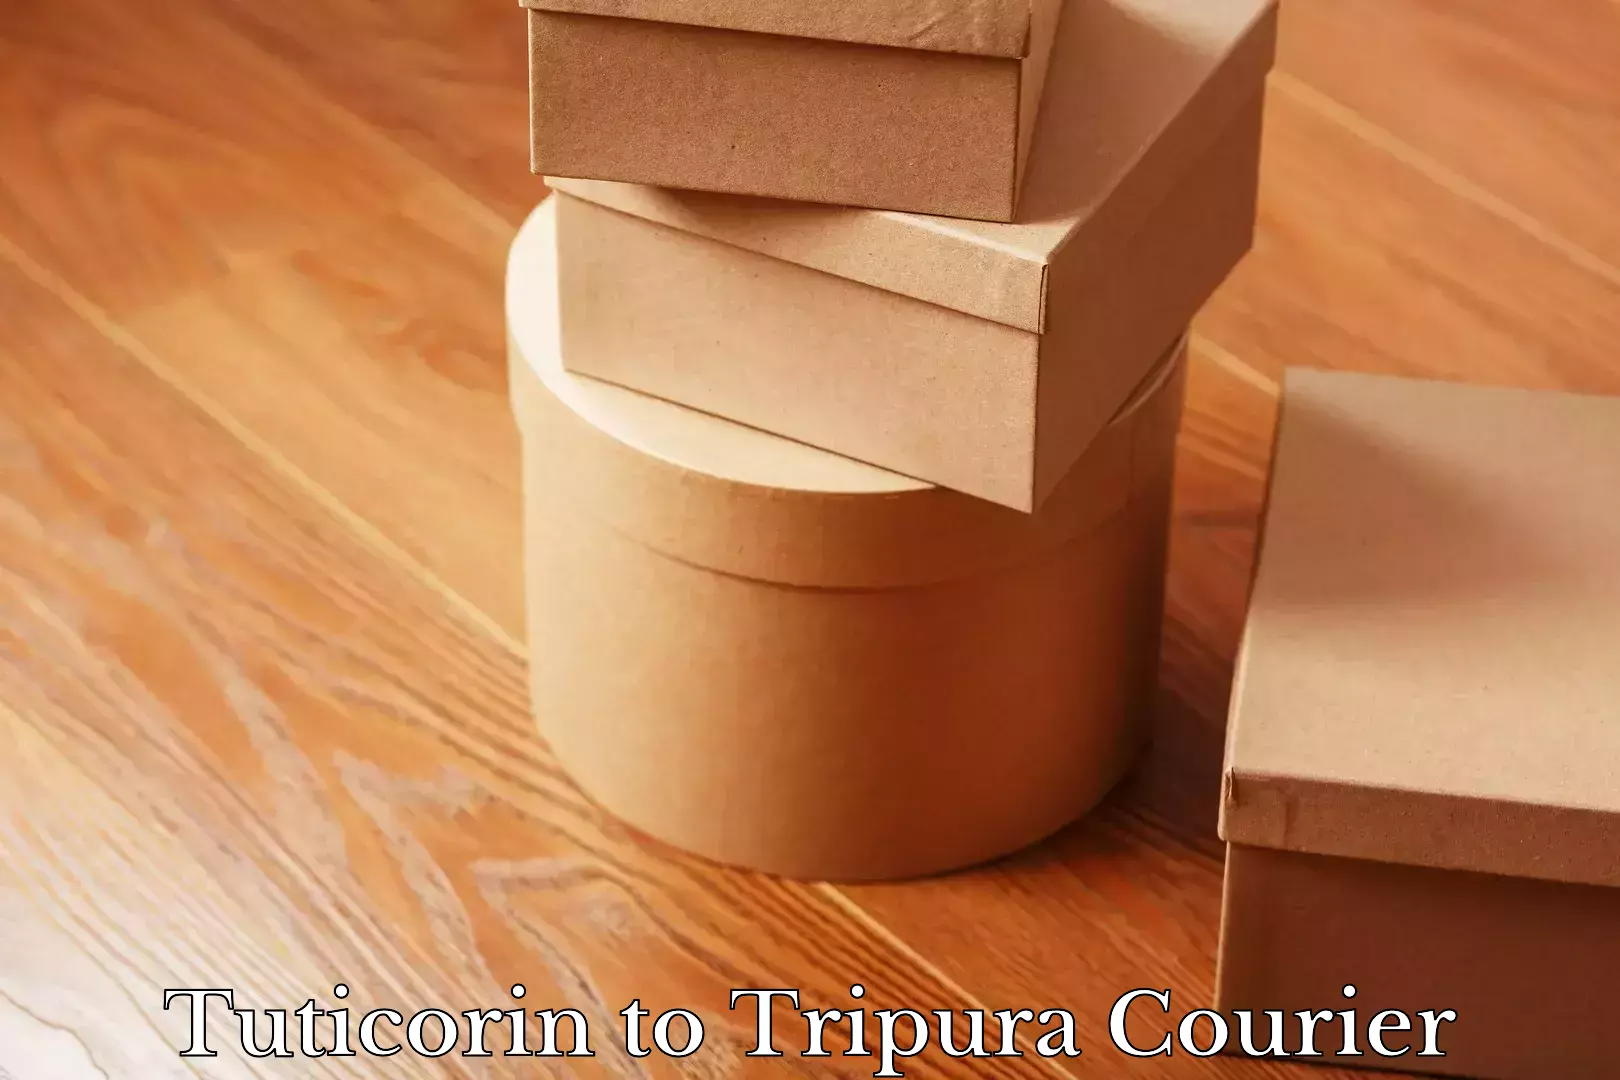 Speedy delivery service Tuticorin to Tripura